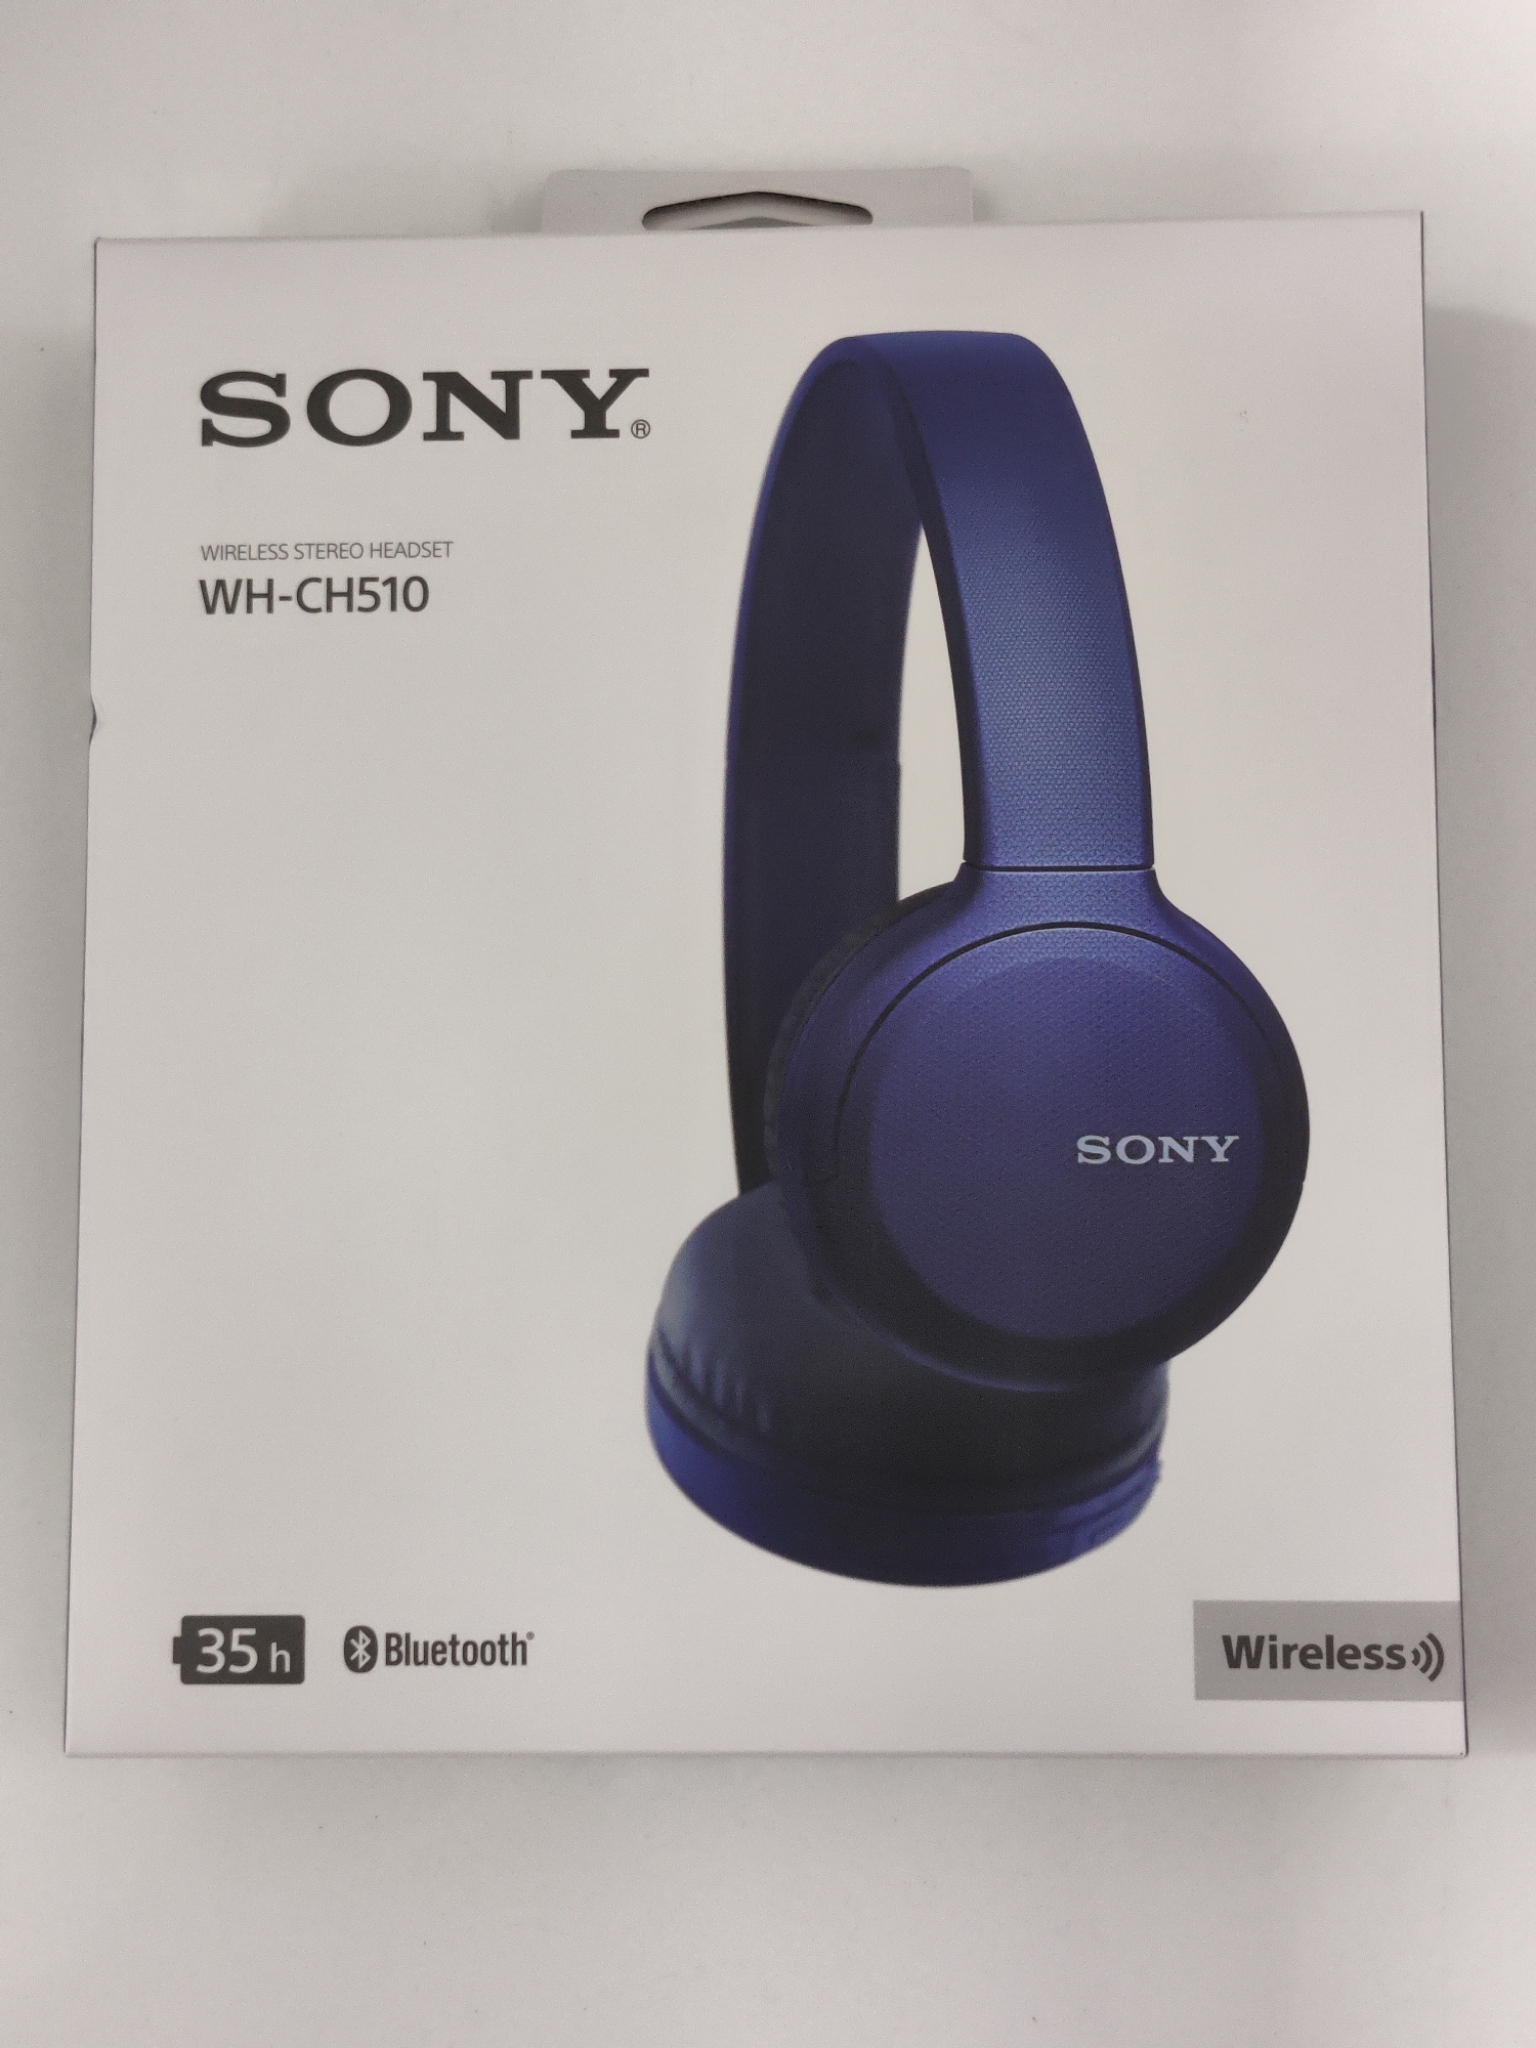 SONY ワイヤレスステレオヘッドセット WH-CH510 - ヘッドホン